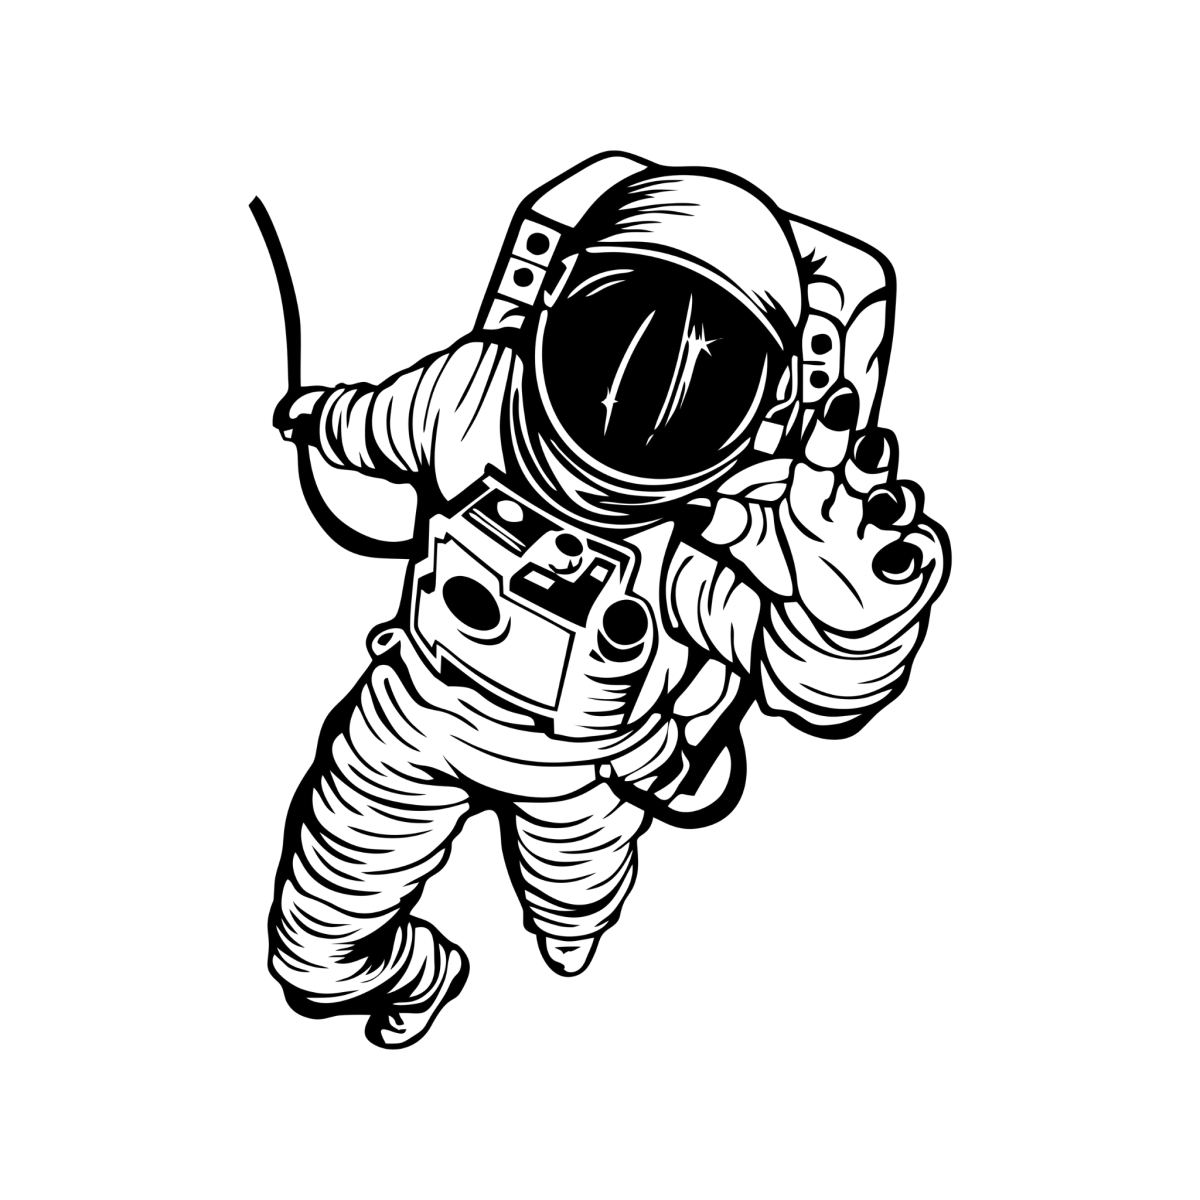 Космонавт - на предплечье